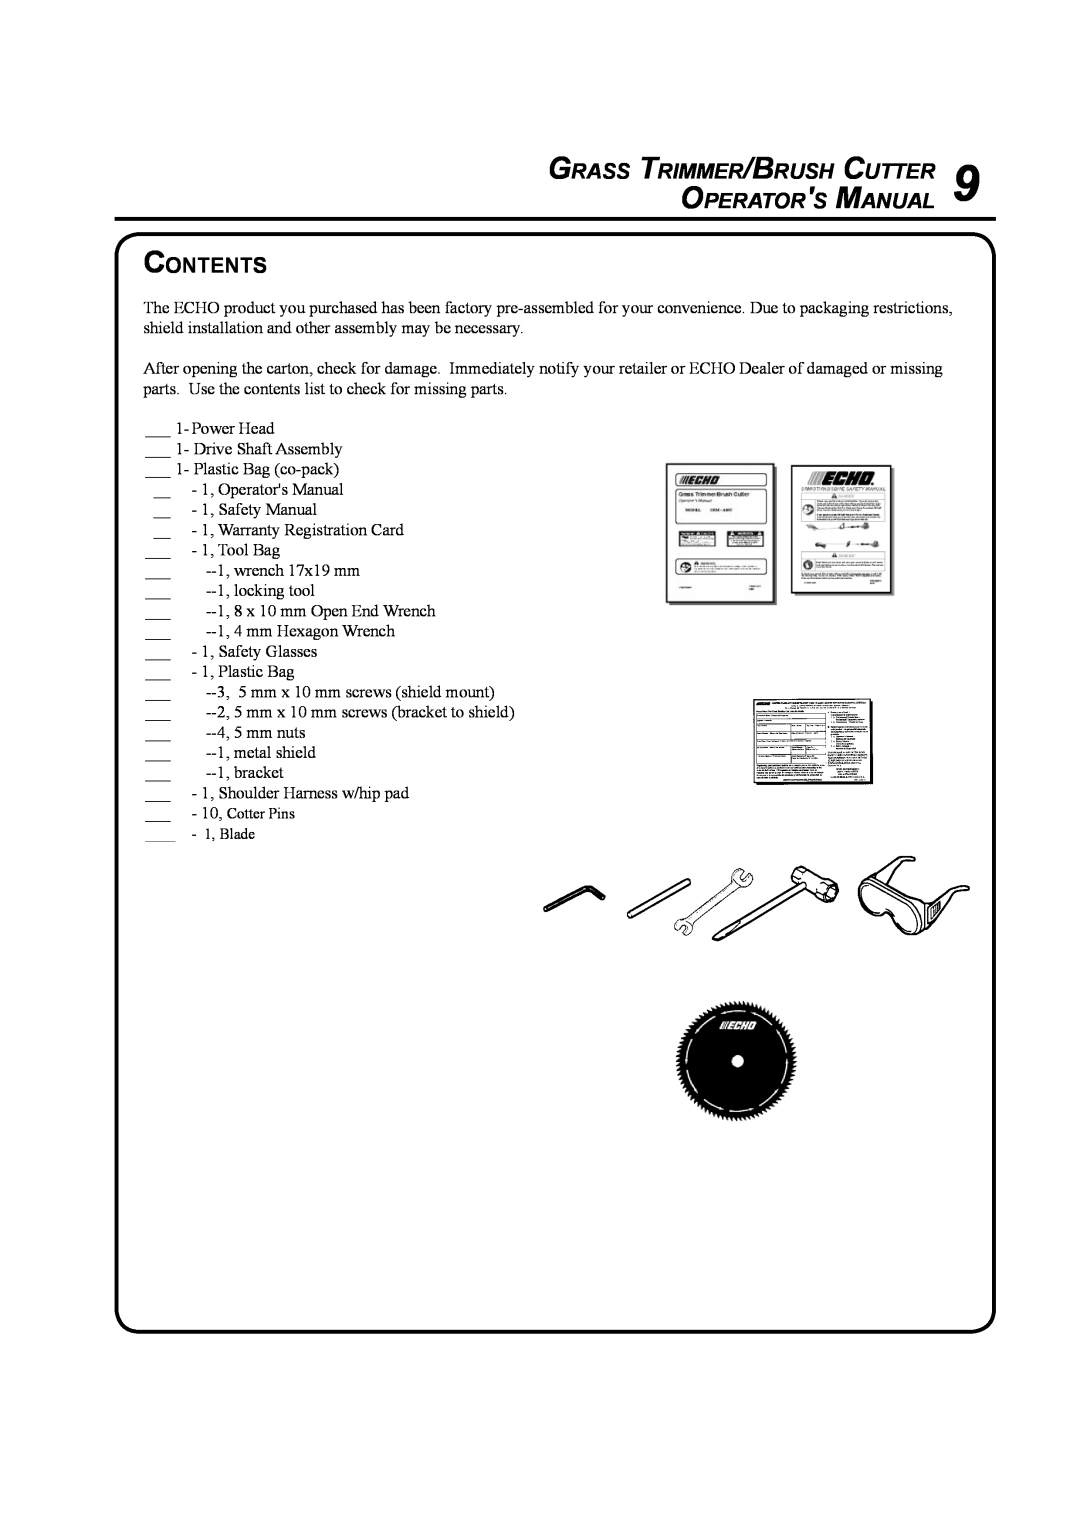 Echo SRM-410U manual Contents, Grass Trimmer/Brush Cutter Operators Manual 